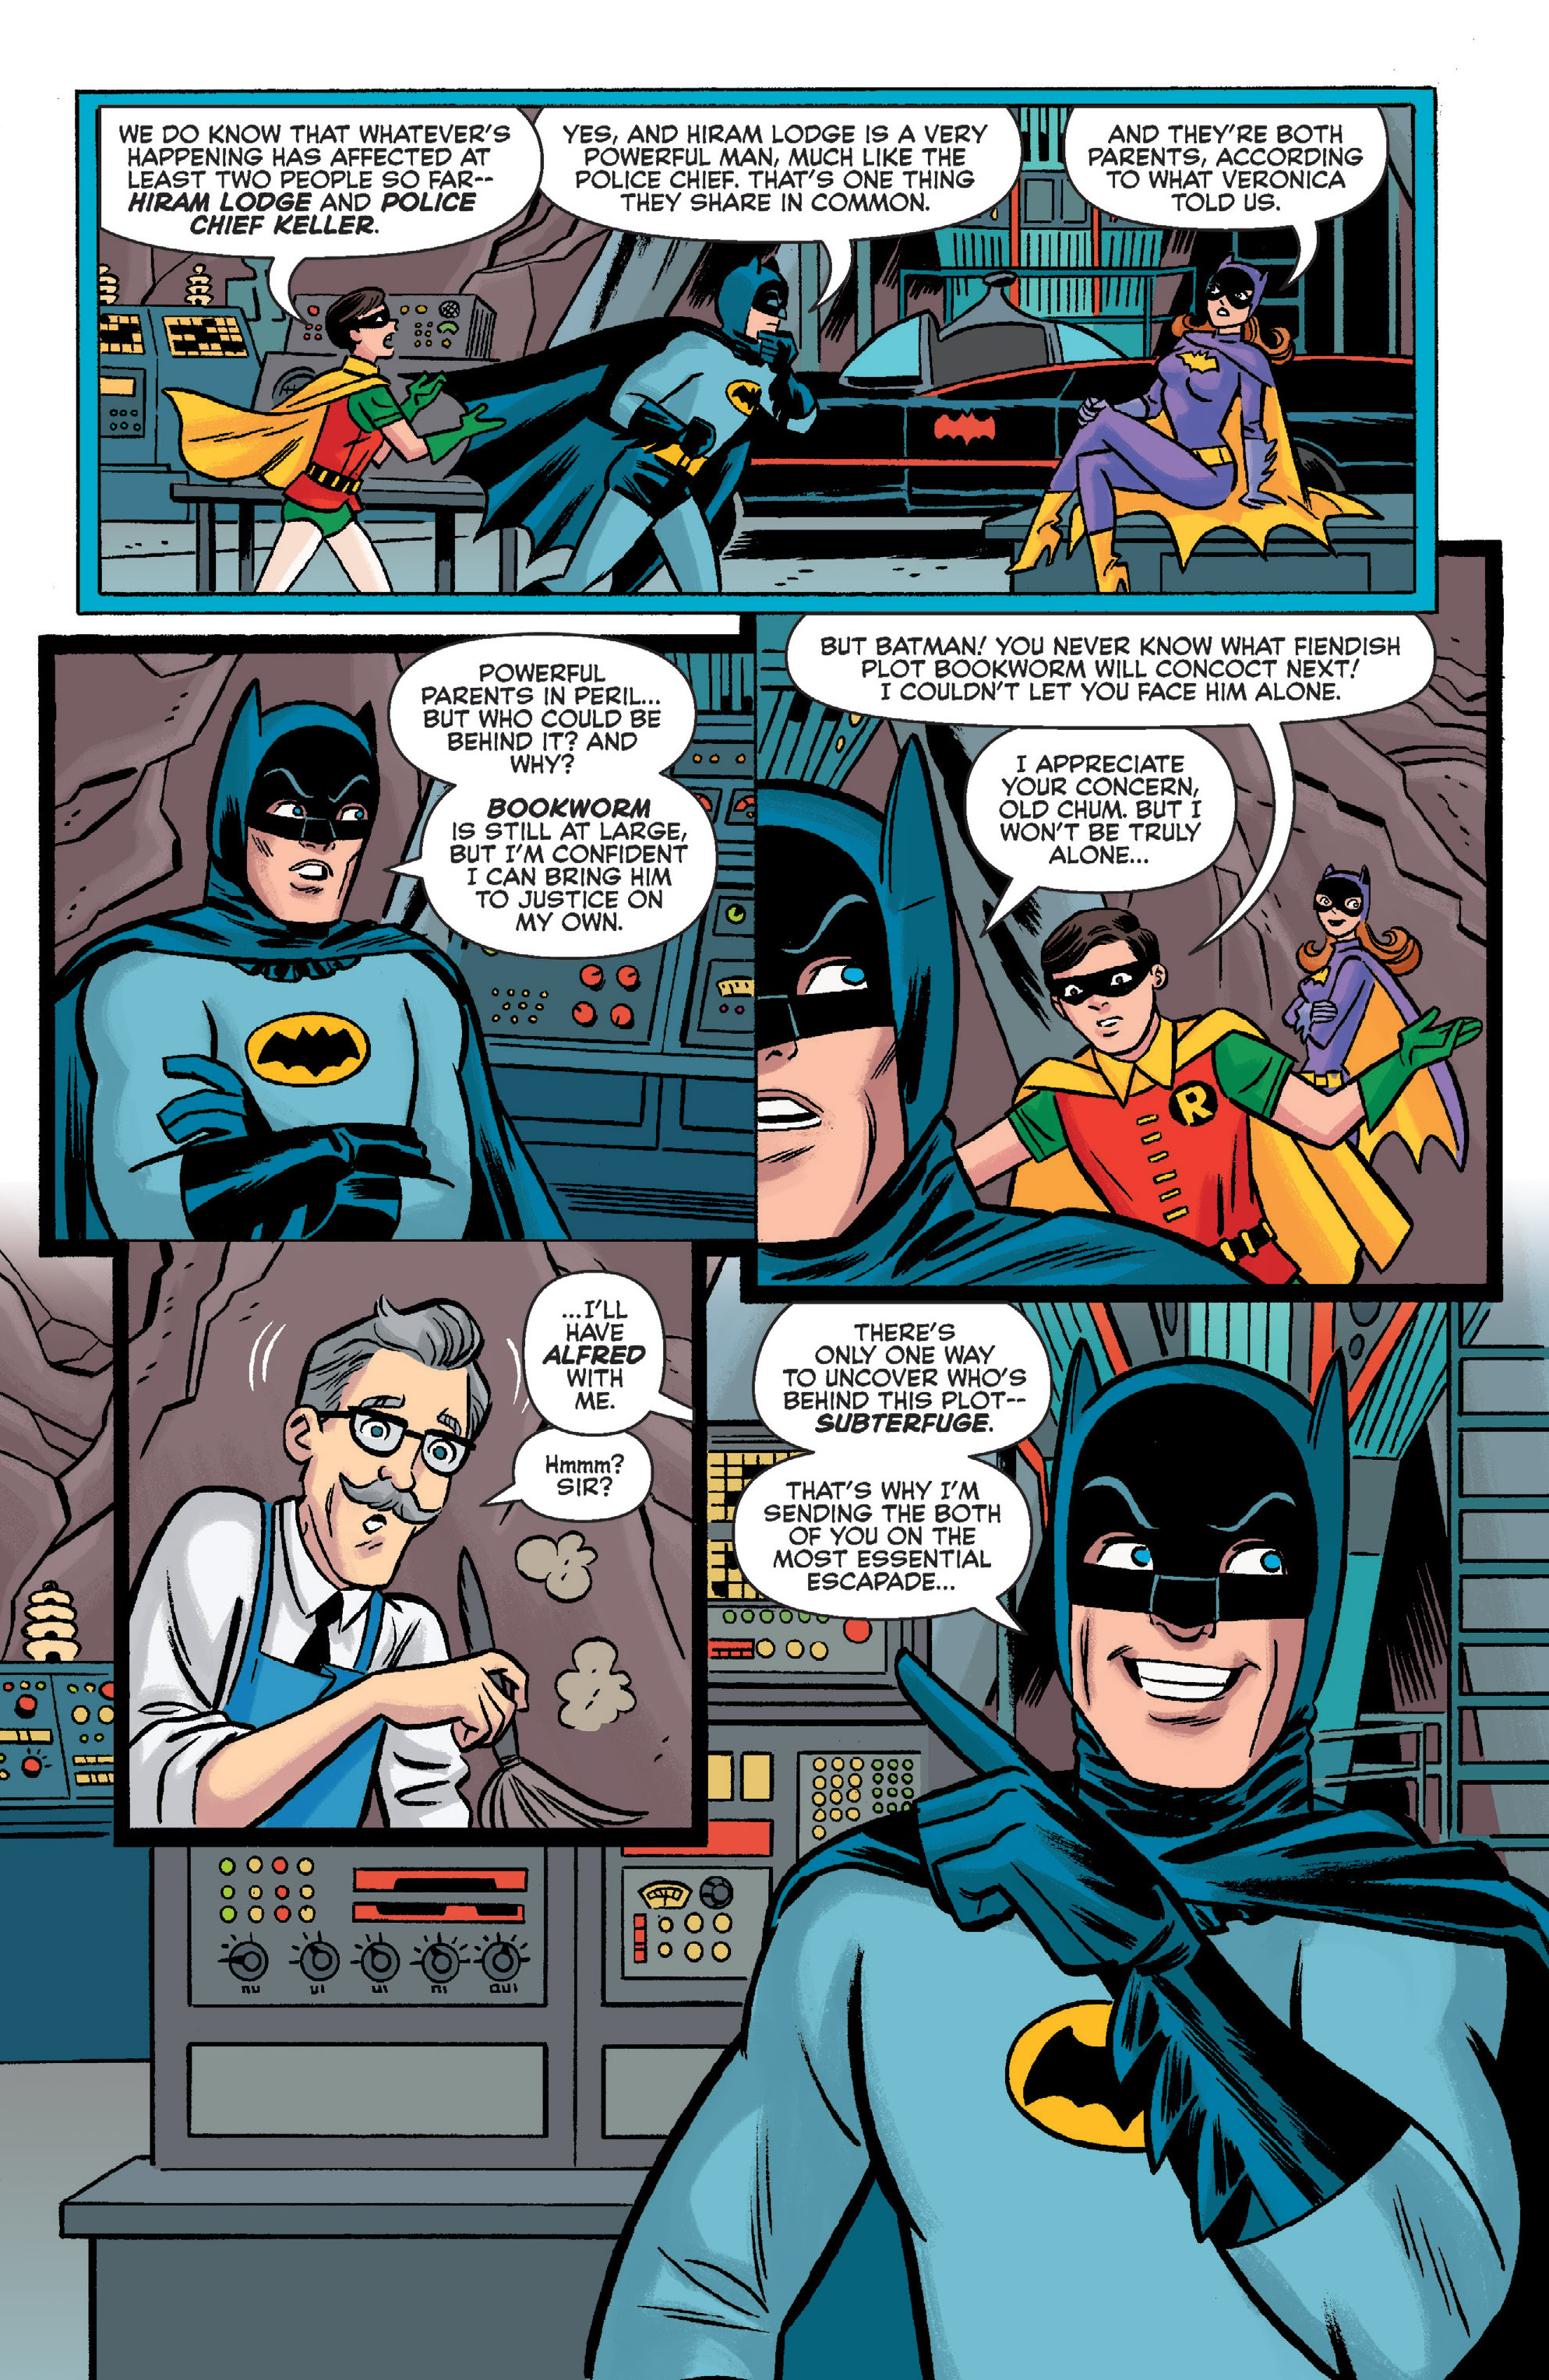 Archie Meets Batman '66 (2018-): Chapter 2 - Page 4